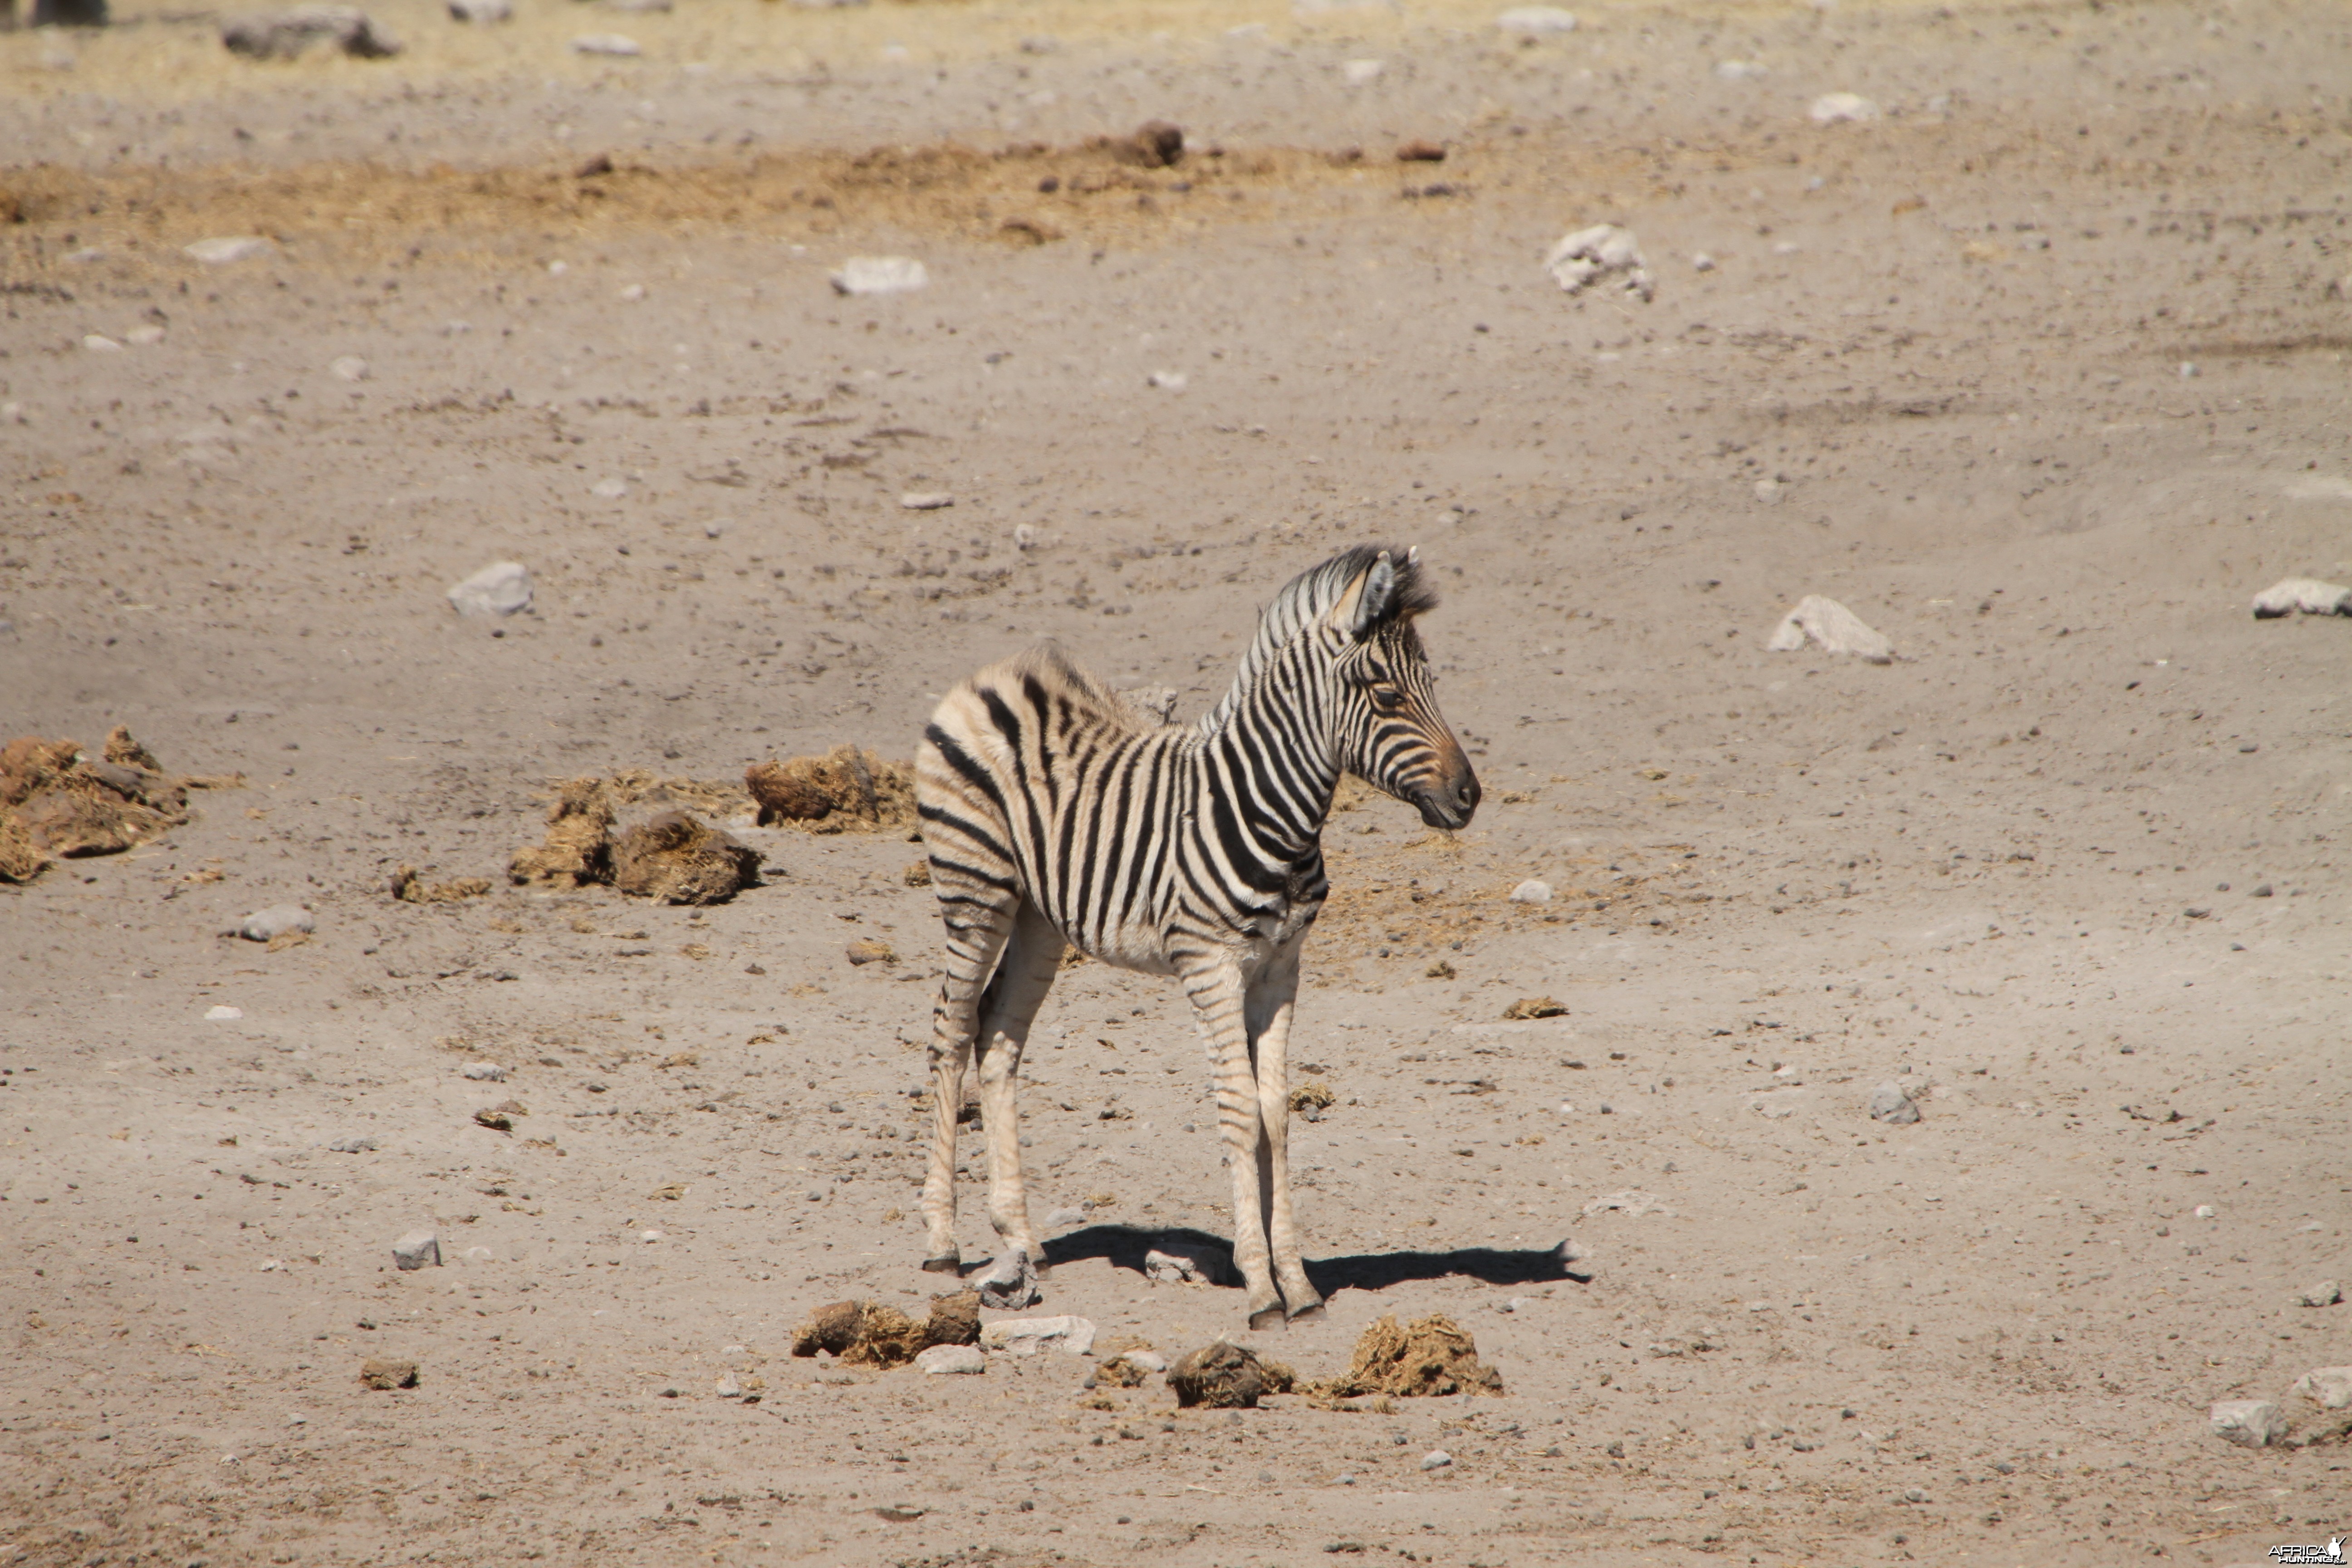 Zebra at Etosha National Park